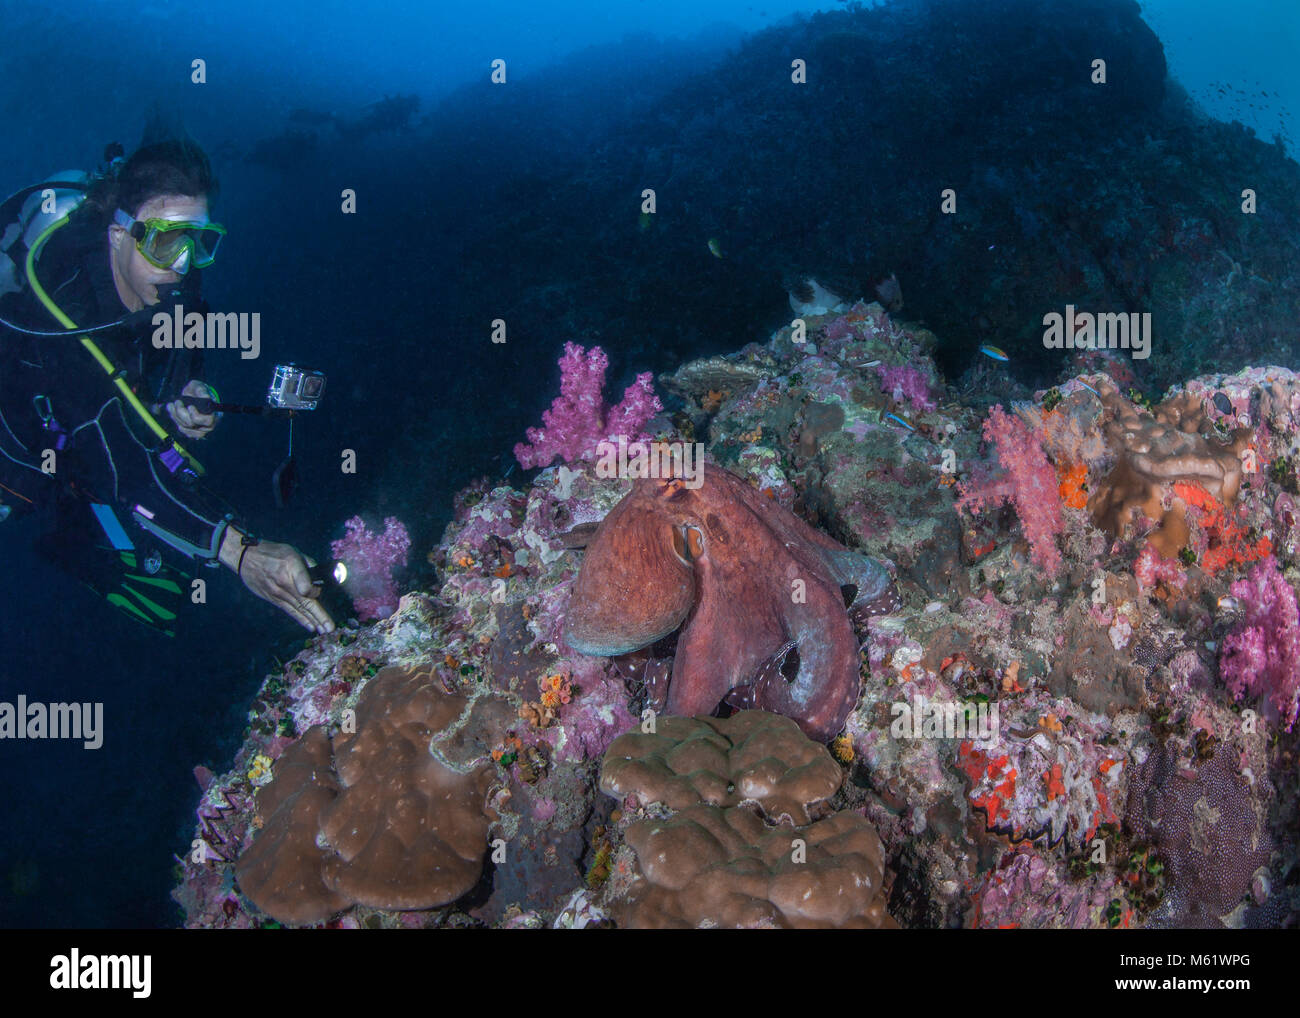 Hembra Scuba Diver videocintas pulpo grande expuesta en un deterioro de los arrecifes de coral. Richelieu Rock, Mar de Andaman, Tailandia. Diciembre, 2017. Foto de stock